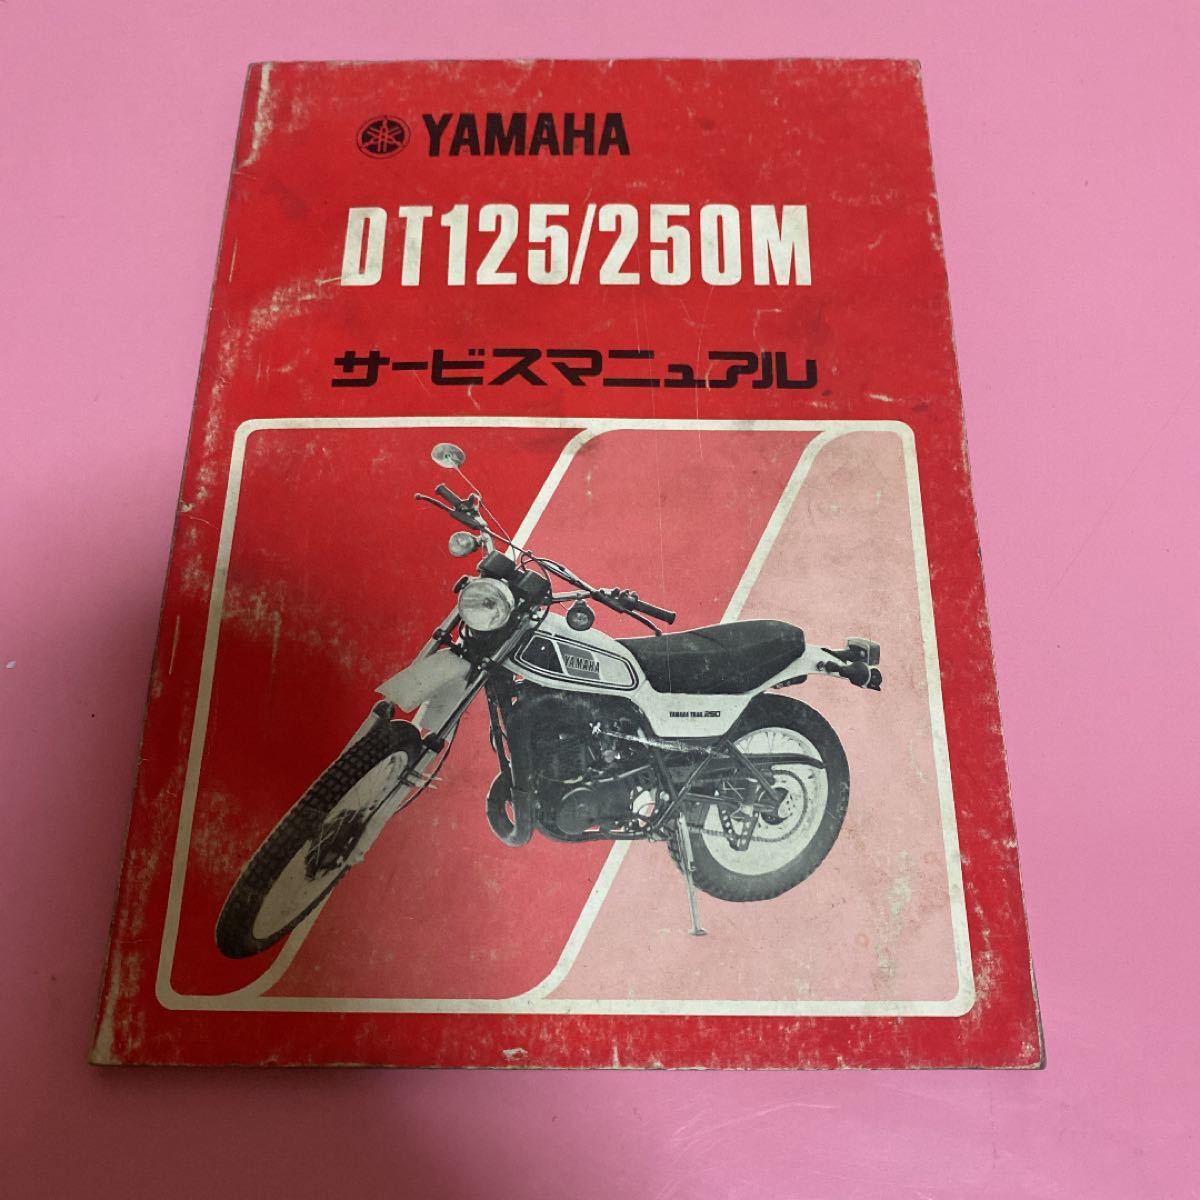 新品本物 Yamaha Dt125 ヤマハ サービスマニュアル 250m サービスマニュアル Www Comisariatolosandes Com